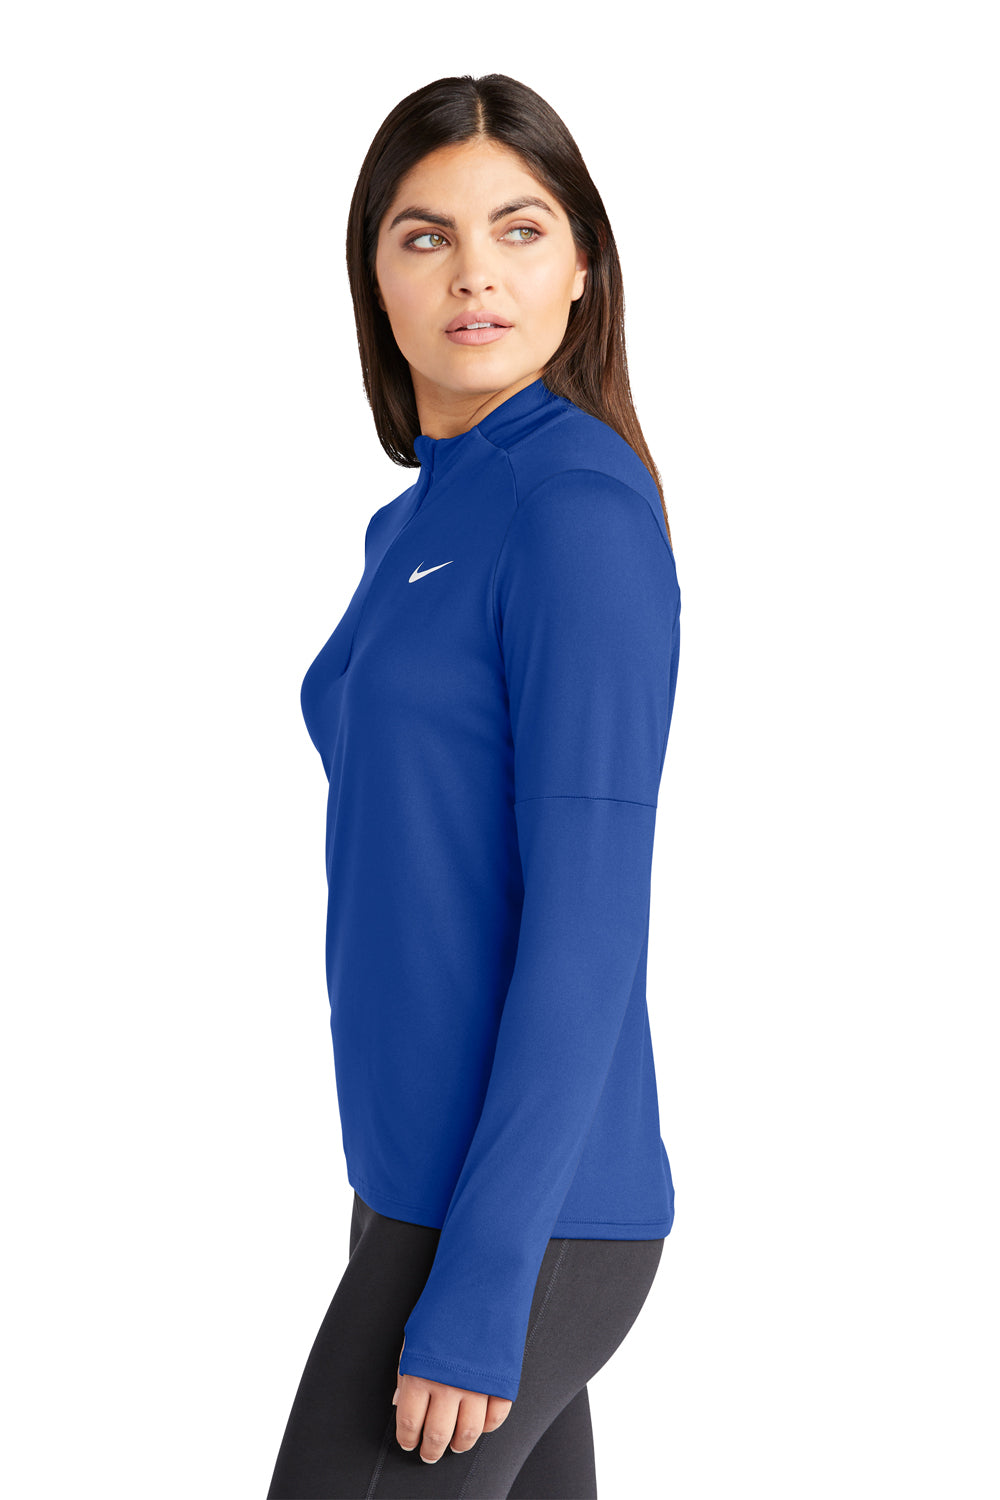 Nike NKDH4951 Womens Element Dri-Fit Moisture Wicking 1/4 Zip Sweatshirt Royal Blue Model Side